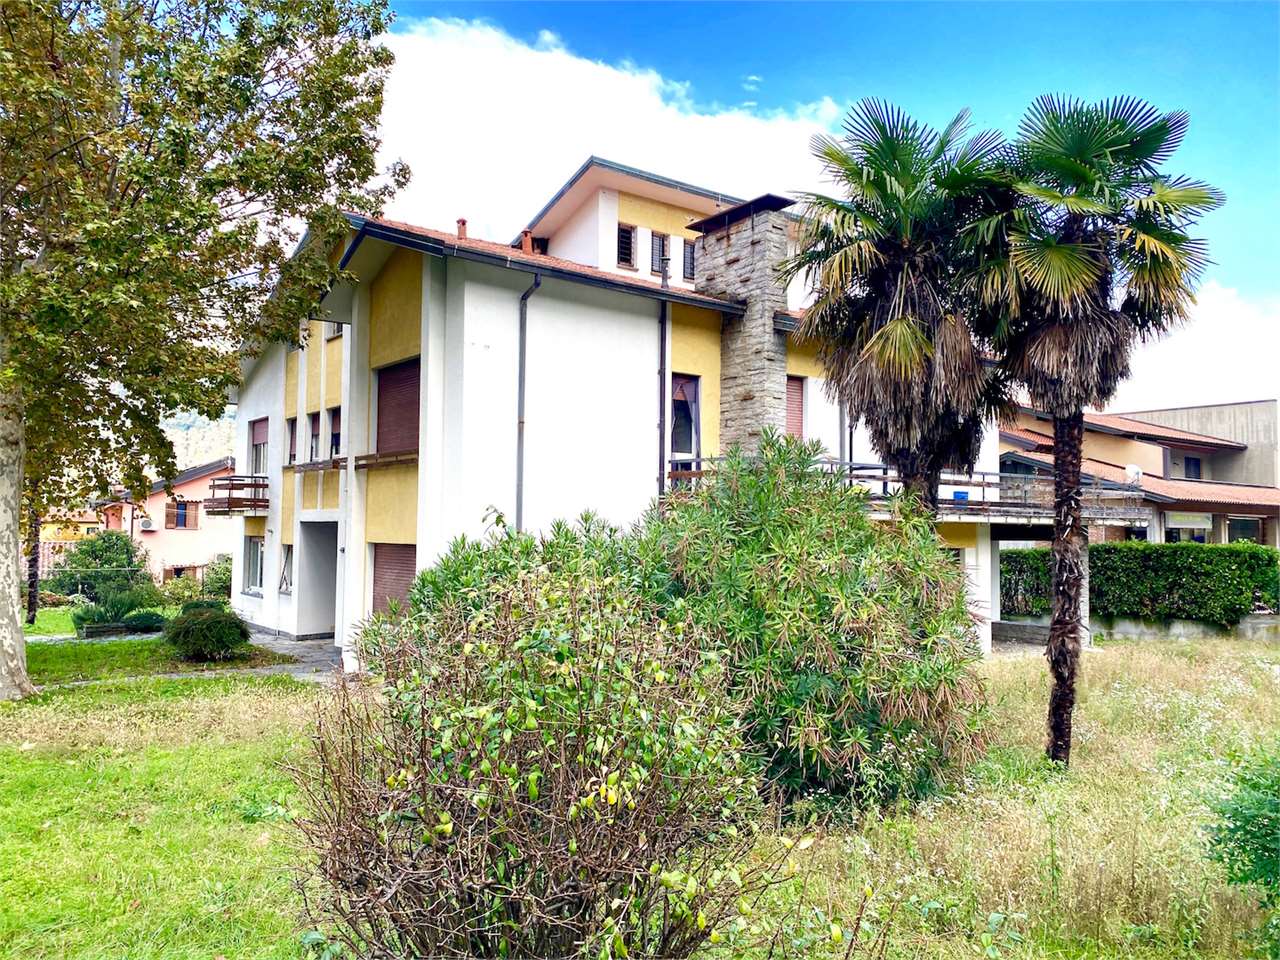 Appartamento in vendita a Cuvio, 3 locali, prezzo € 120.000 | PortaleAgenzieImmobiliari.it